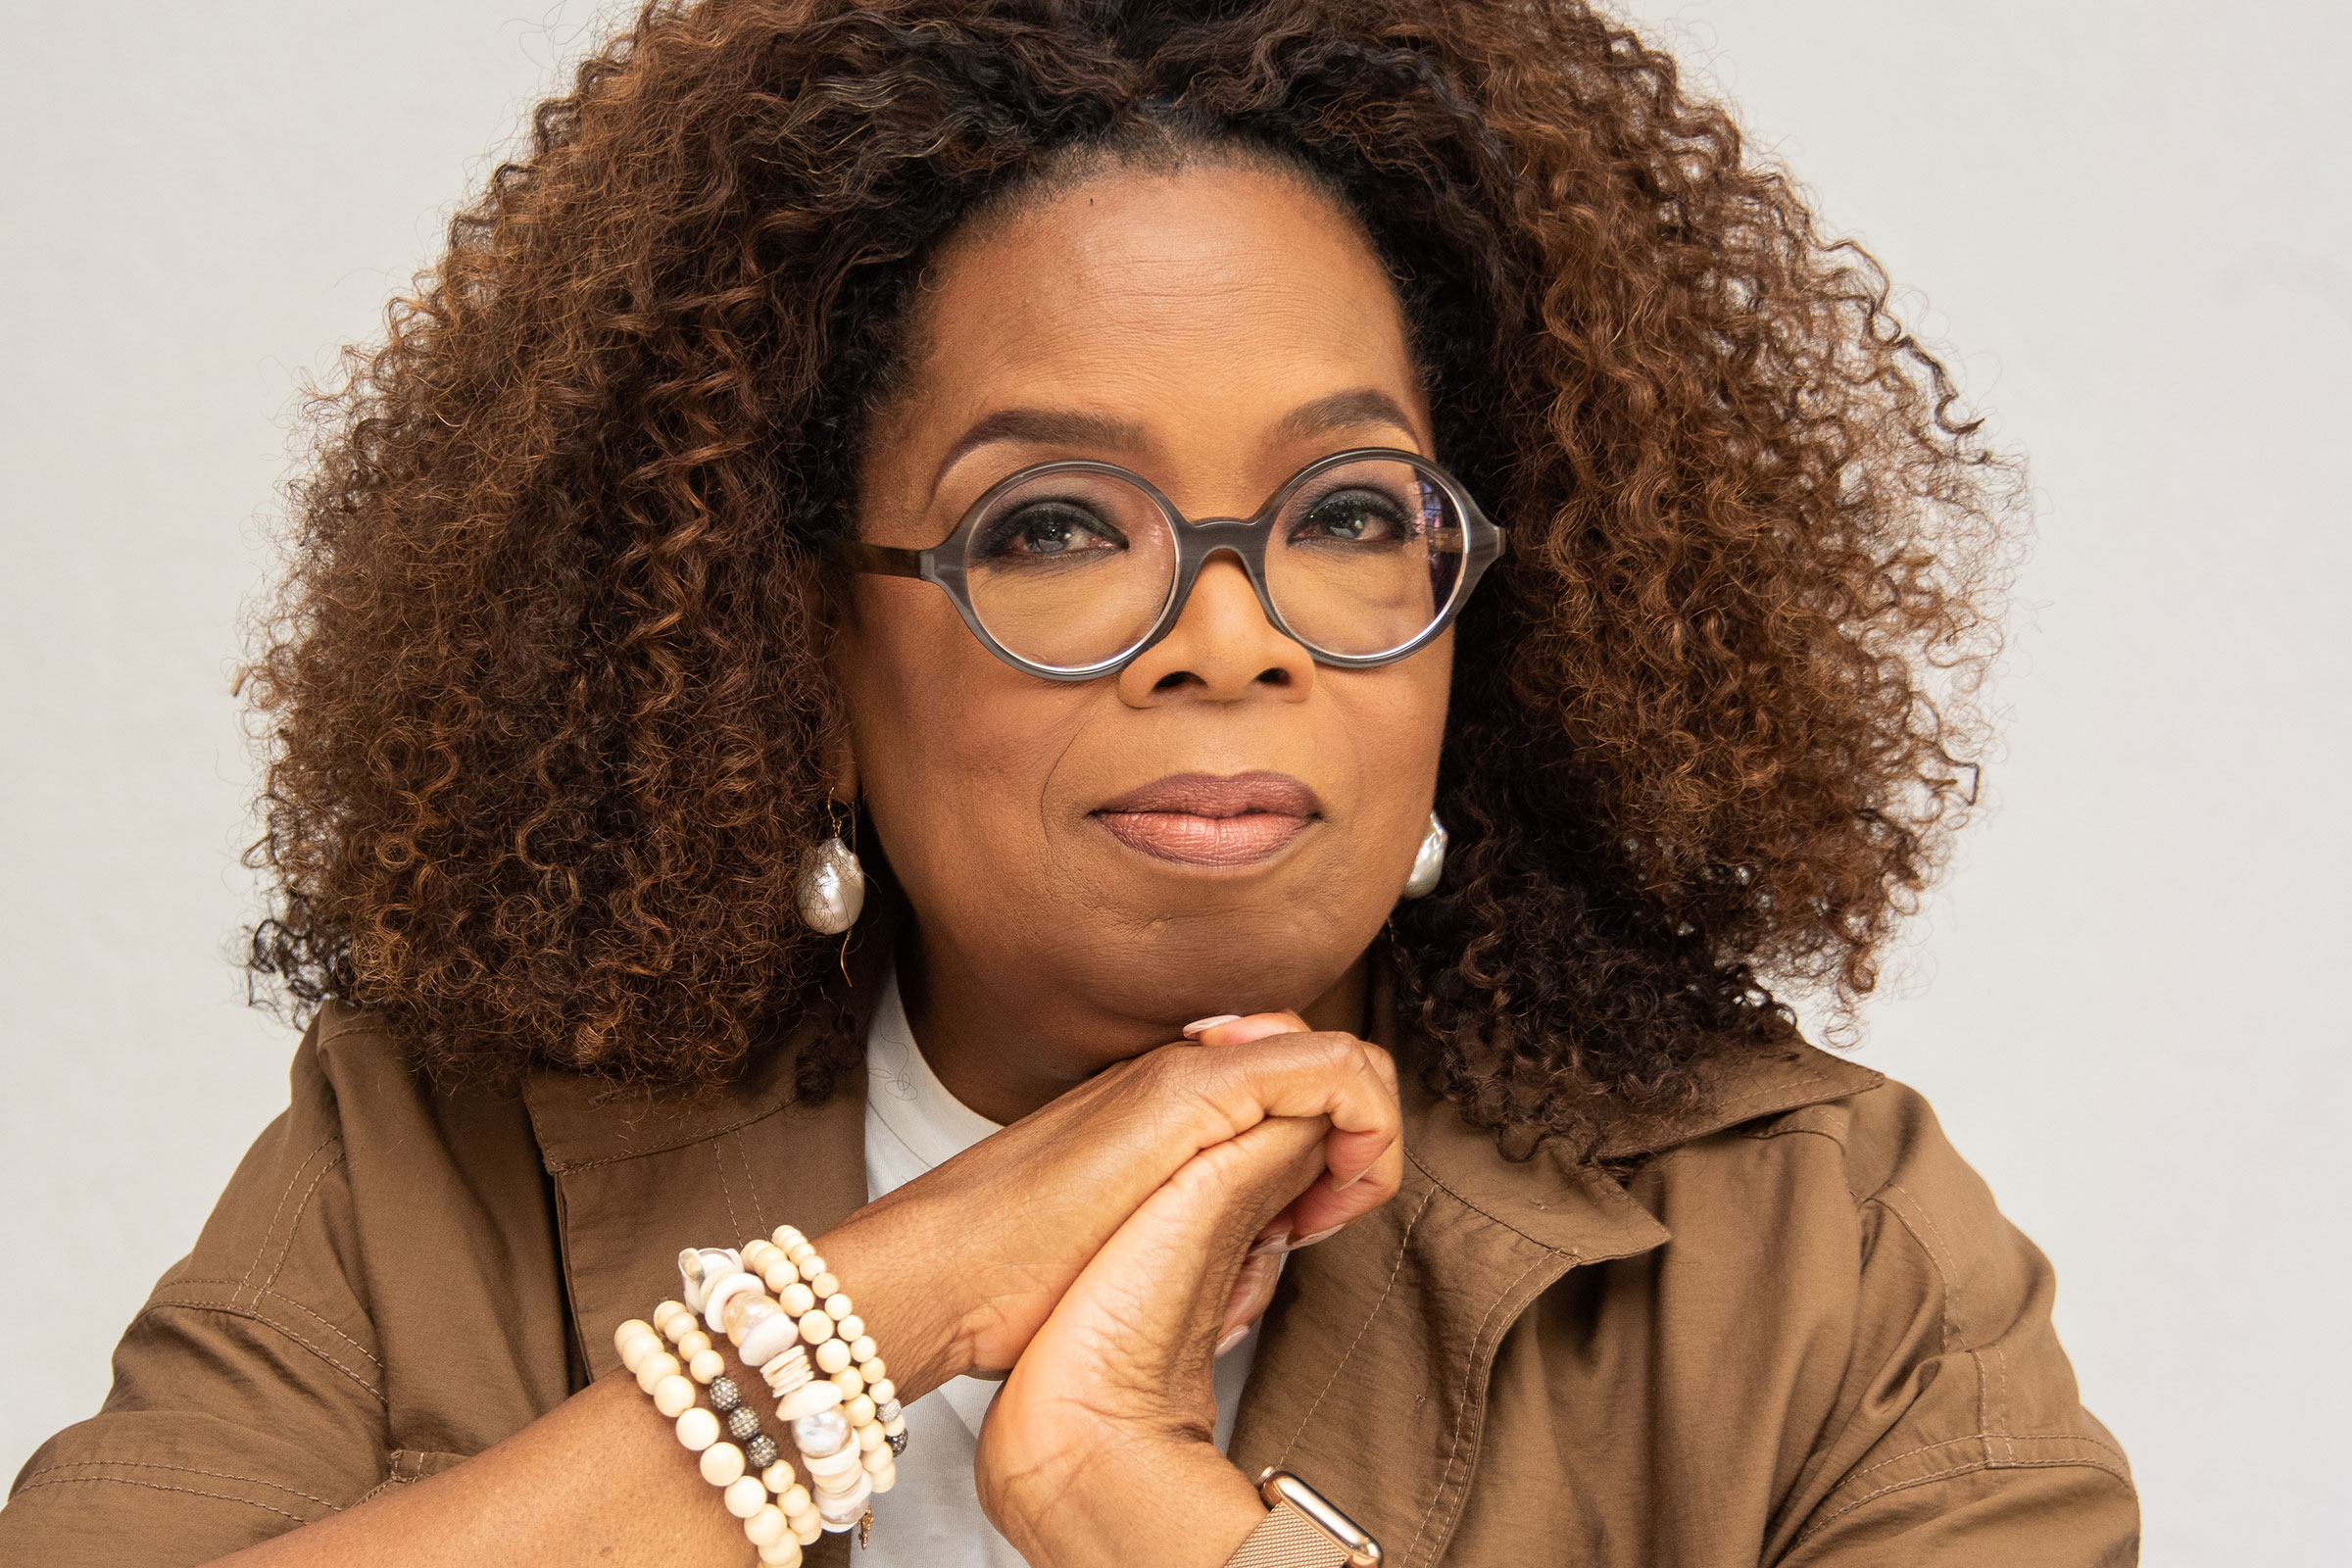 most popular 50 women 1. Oprah Winfrey